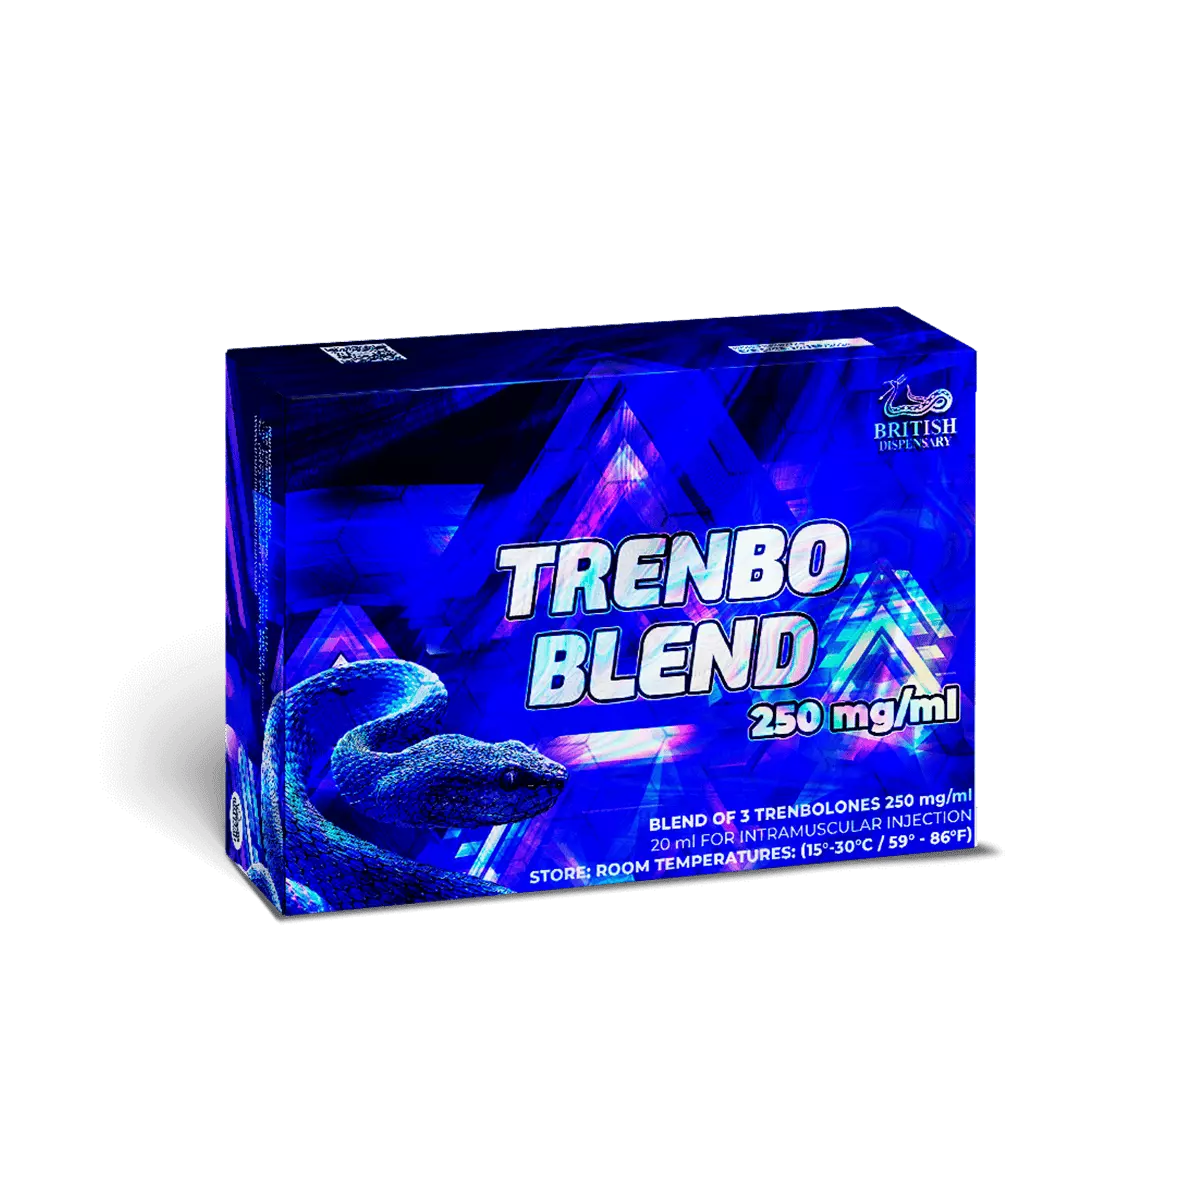 TRENBO BLEND